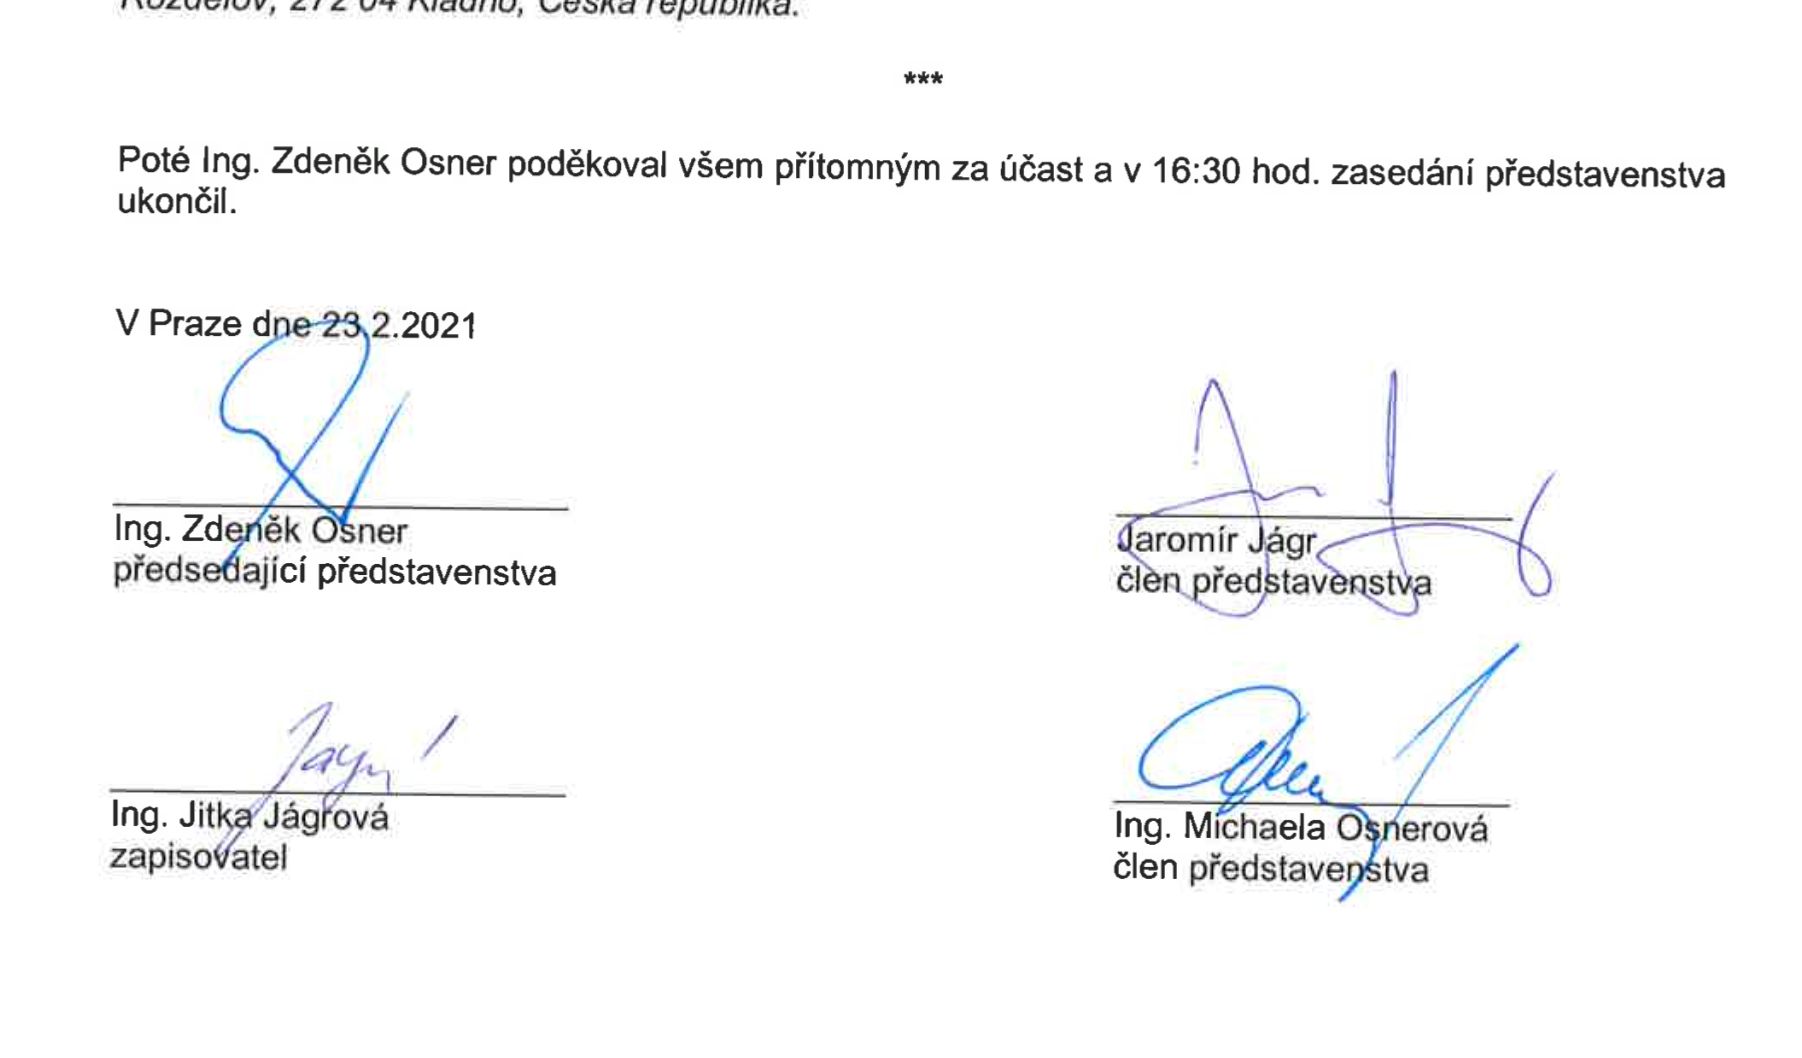 Podpis Jaromíra Jágra na zápisu, díky kterému se stal místopředsedou představenstva Energie.